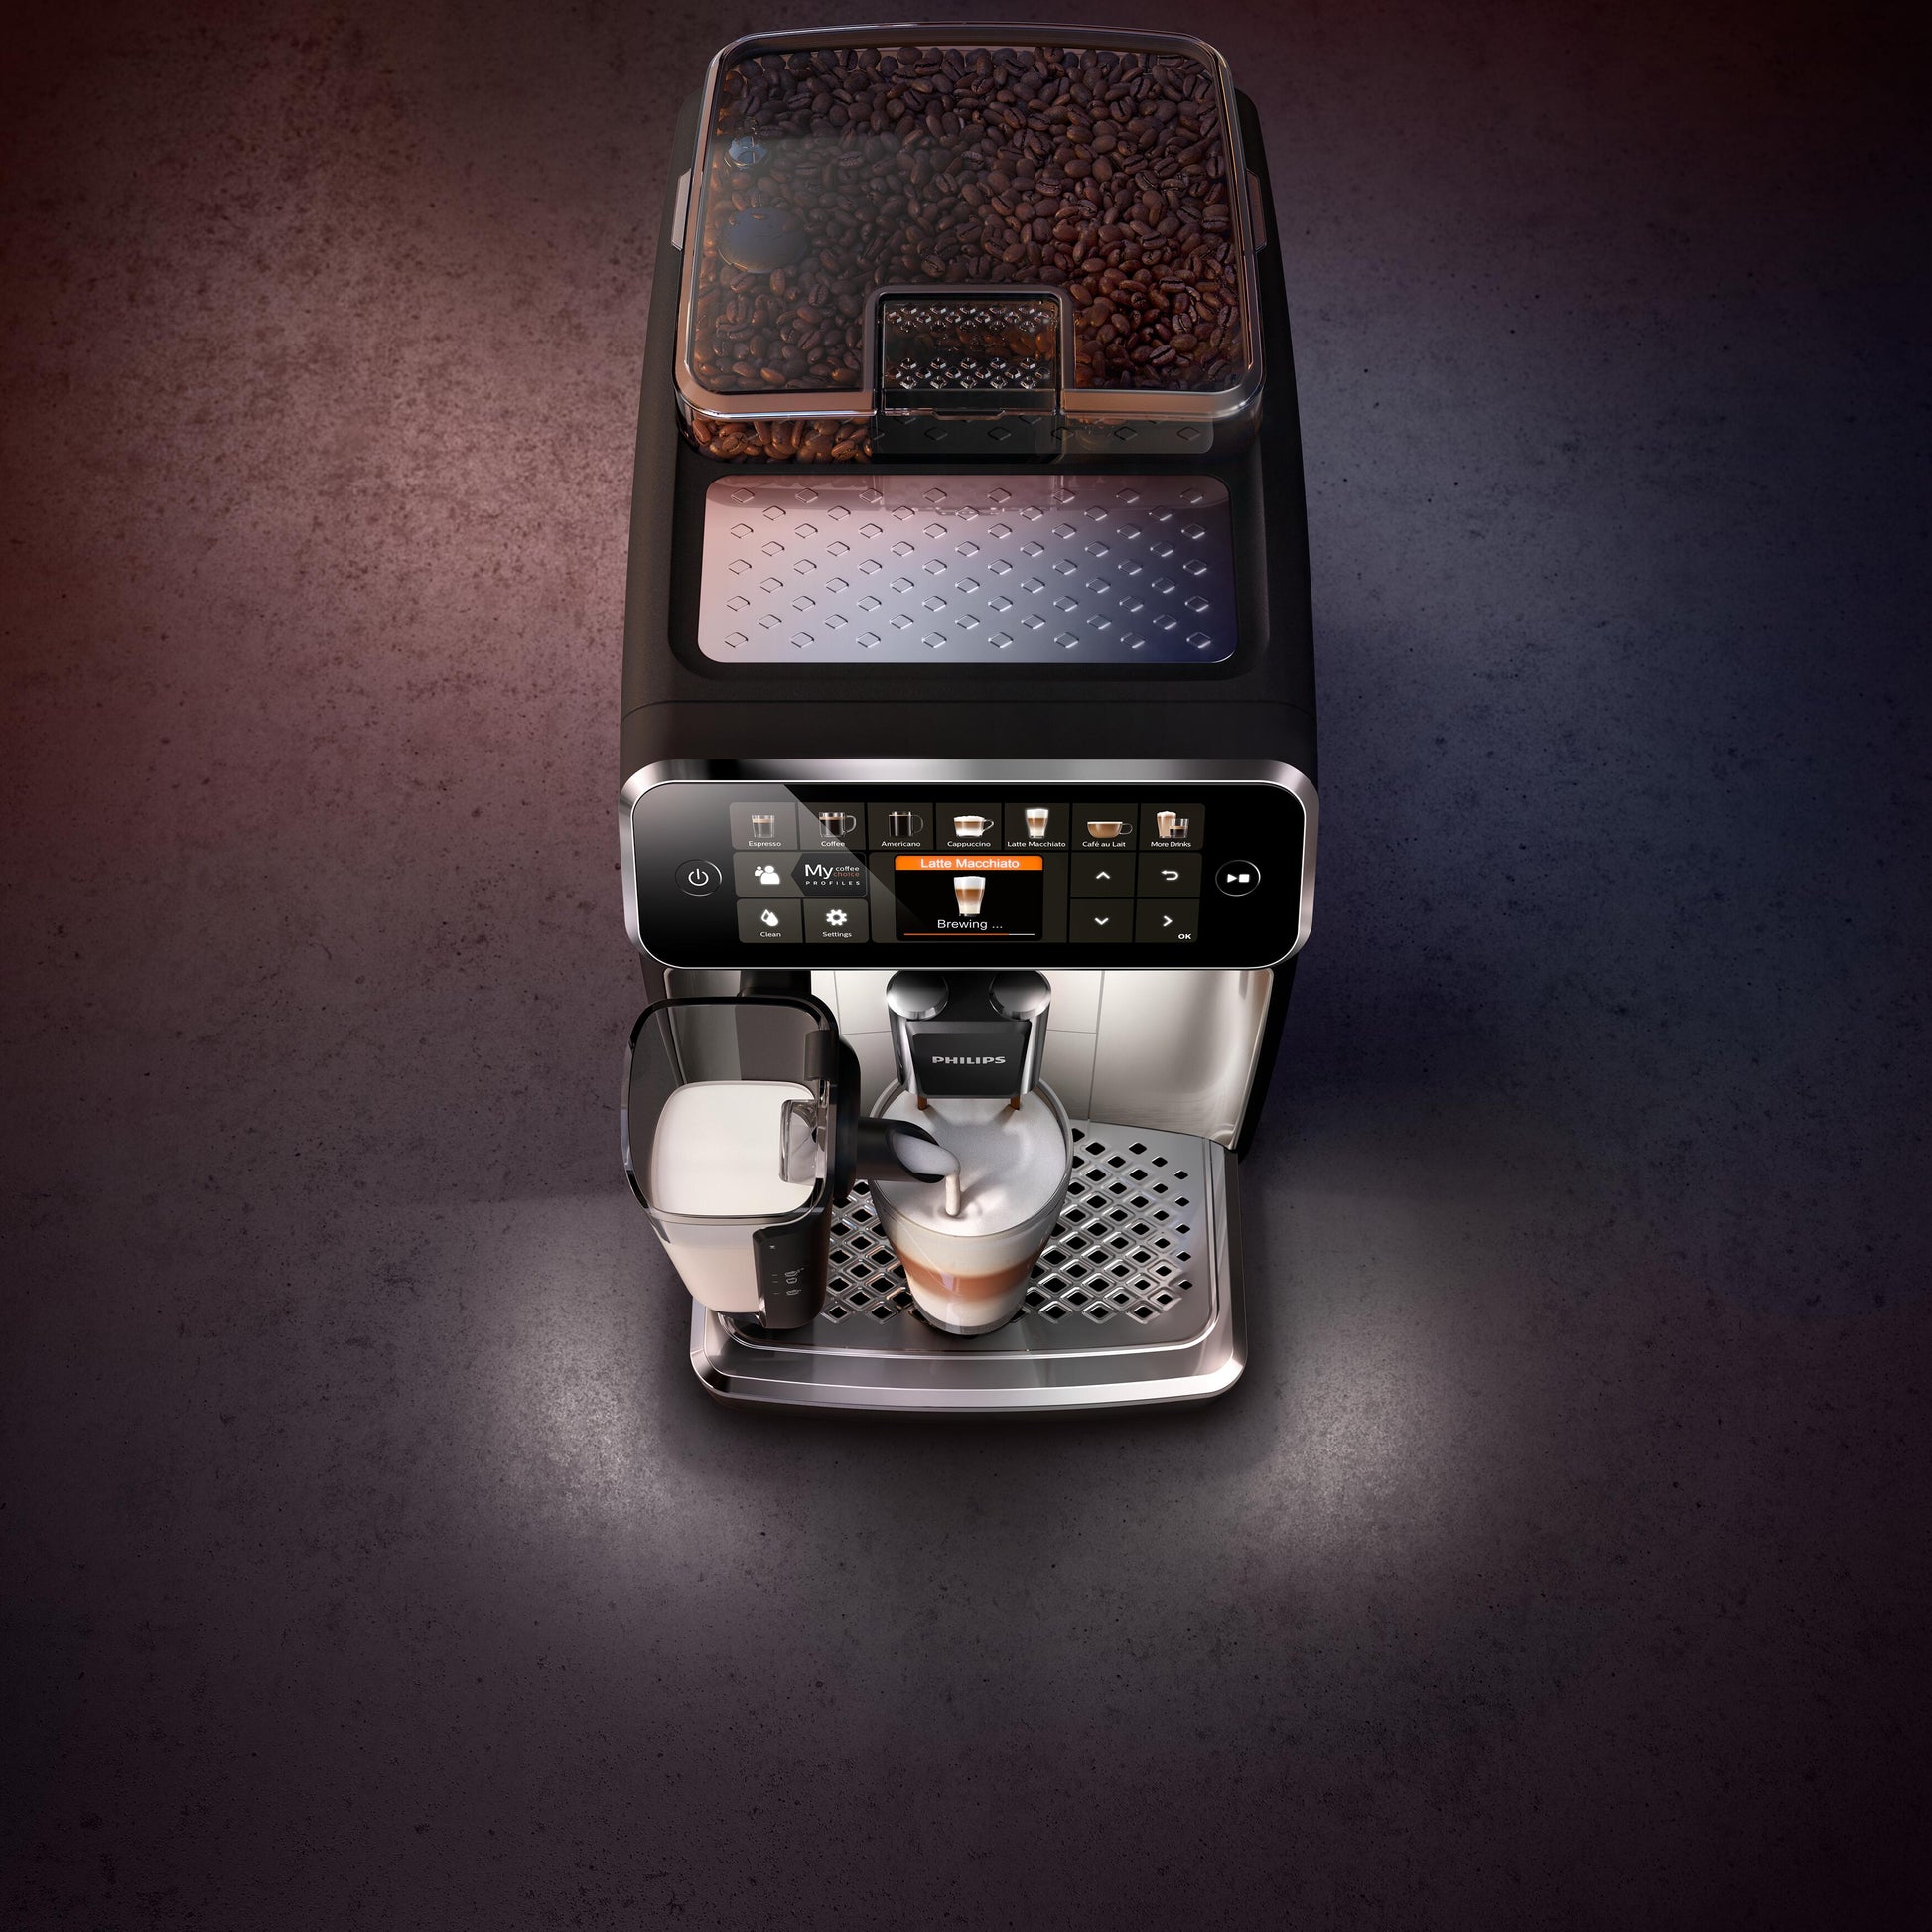  PHILIPS Phlips 5400 - Máquina de café expreso totalmente  automática con LatteGo, EP5447/94 : Hogar y Cocina